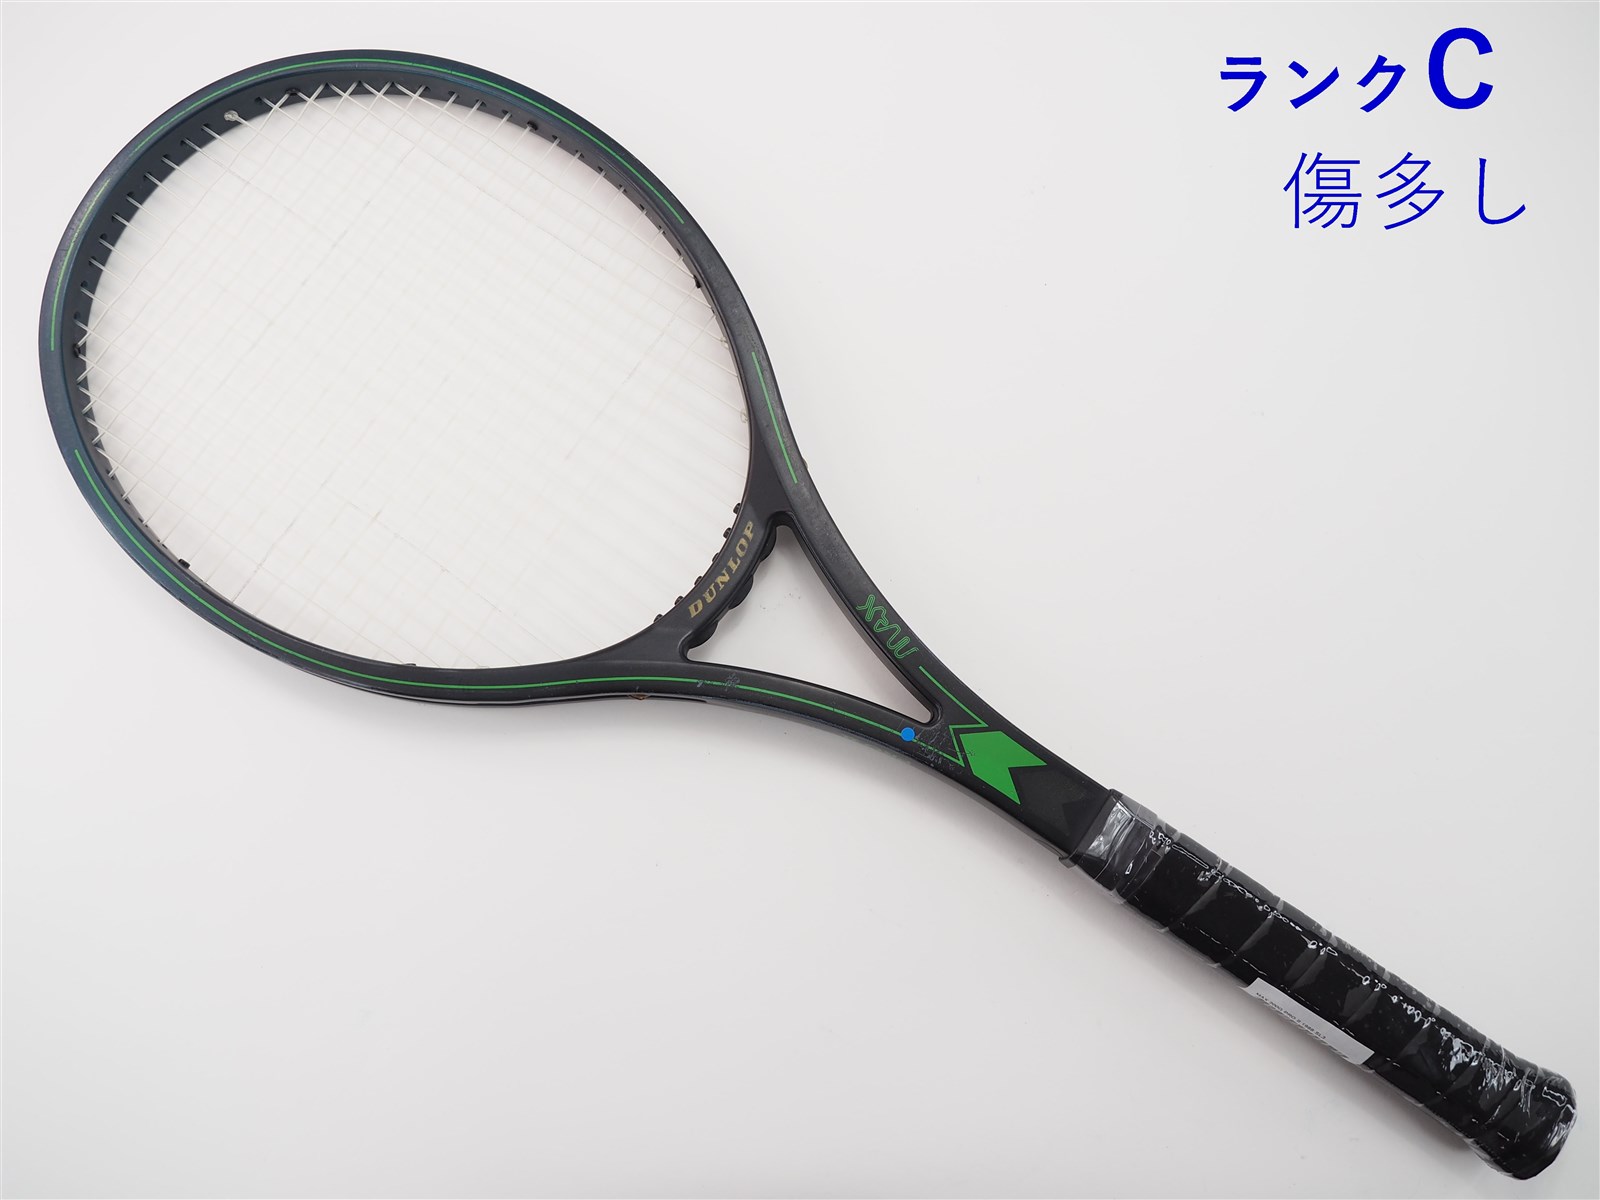 中古】ダンロップ マックス 200G プロ 2 1988年モデルDUNLOP MAX 200G PRO II 1988(SL3)【中古  テニスラケット】【送料無料】の通販・販売| ダンロップ| テニスサポートセンターへ